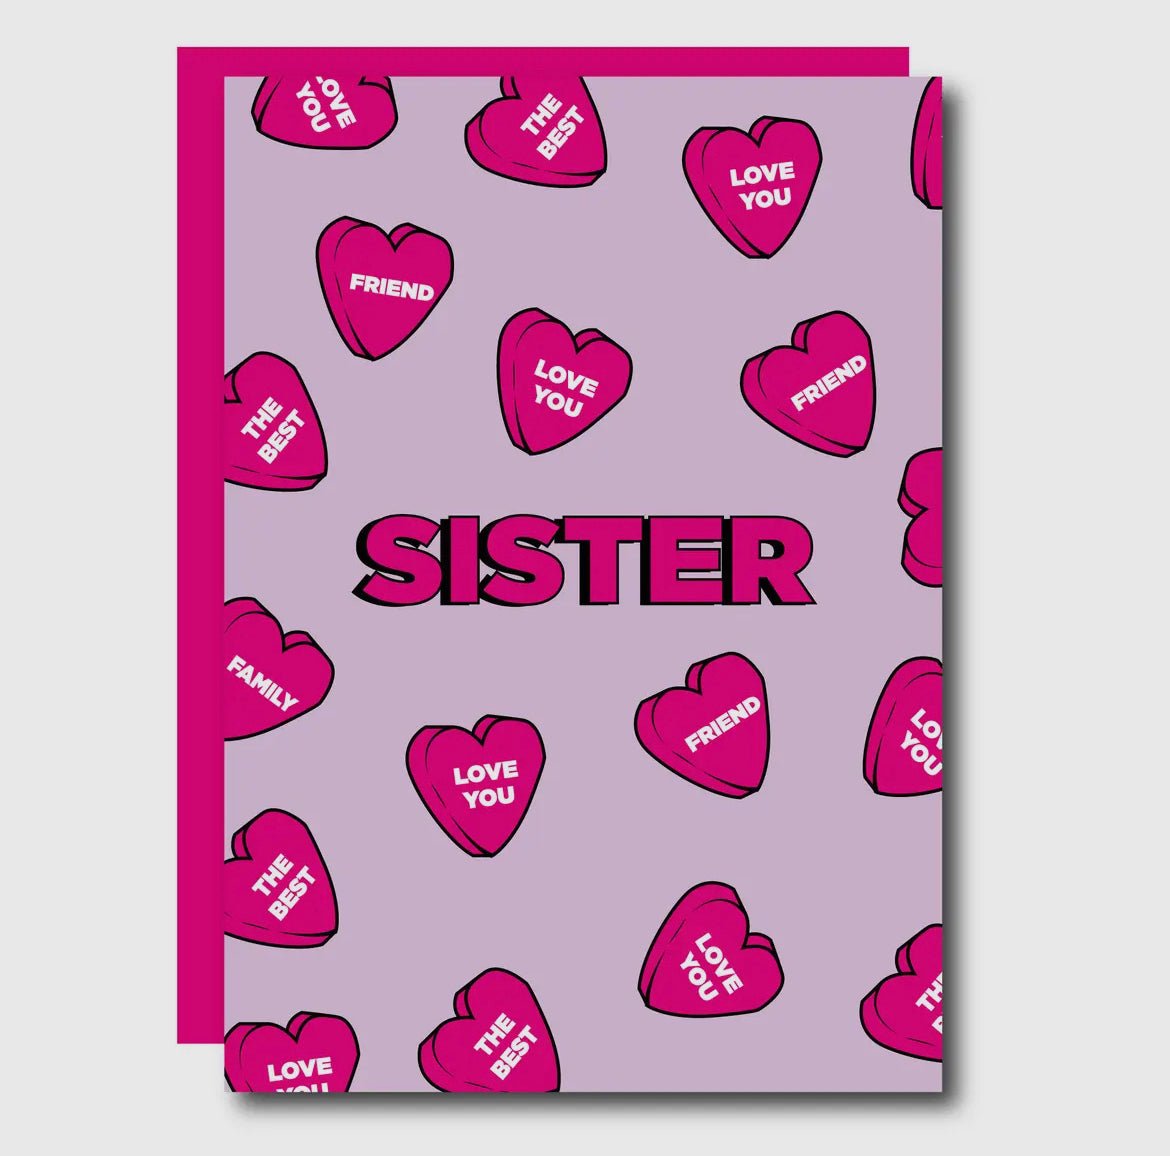 Sister Heart Card